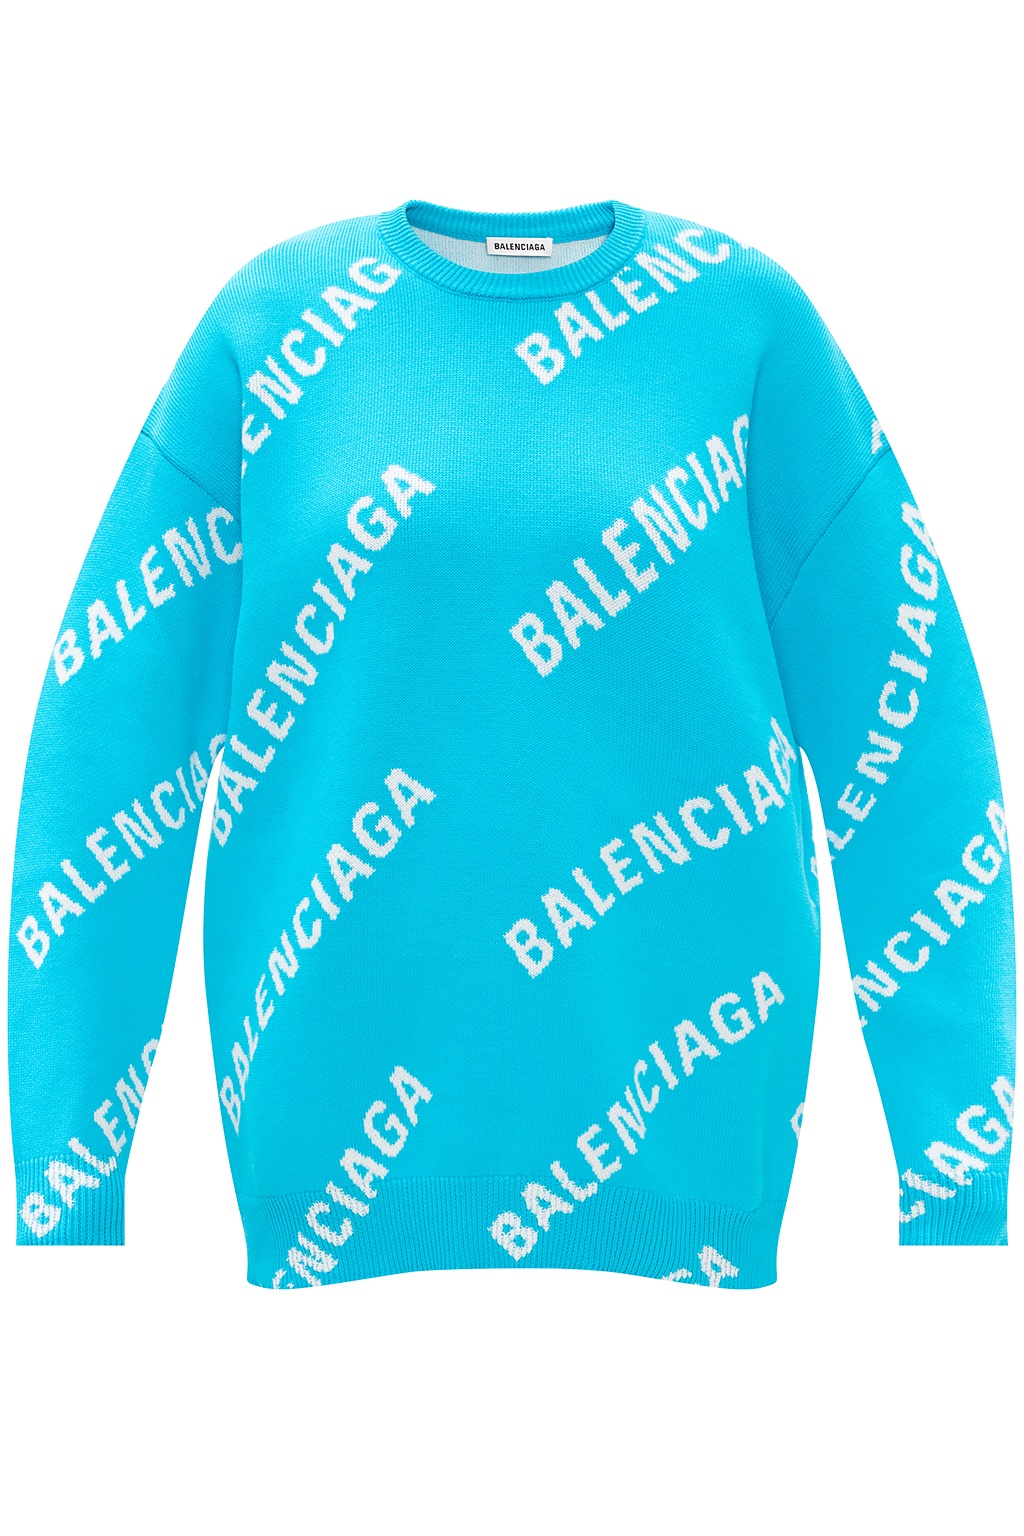 Sweater with logo Balenciaga -